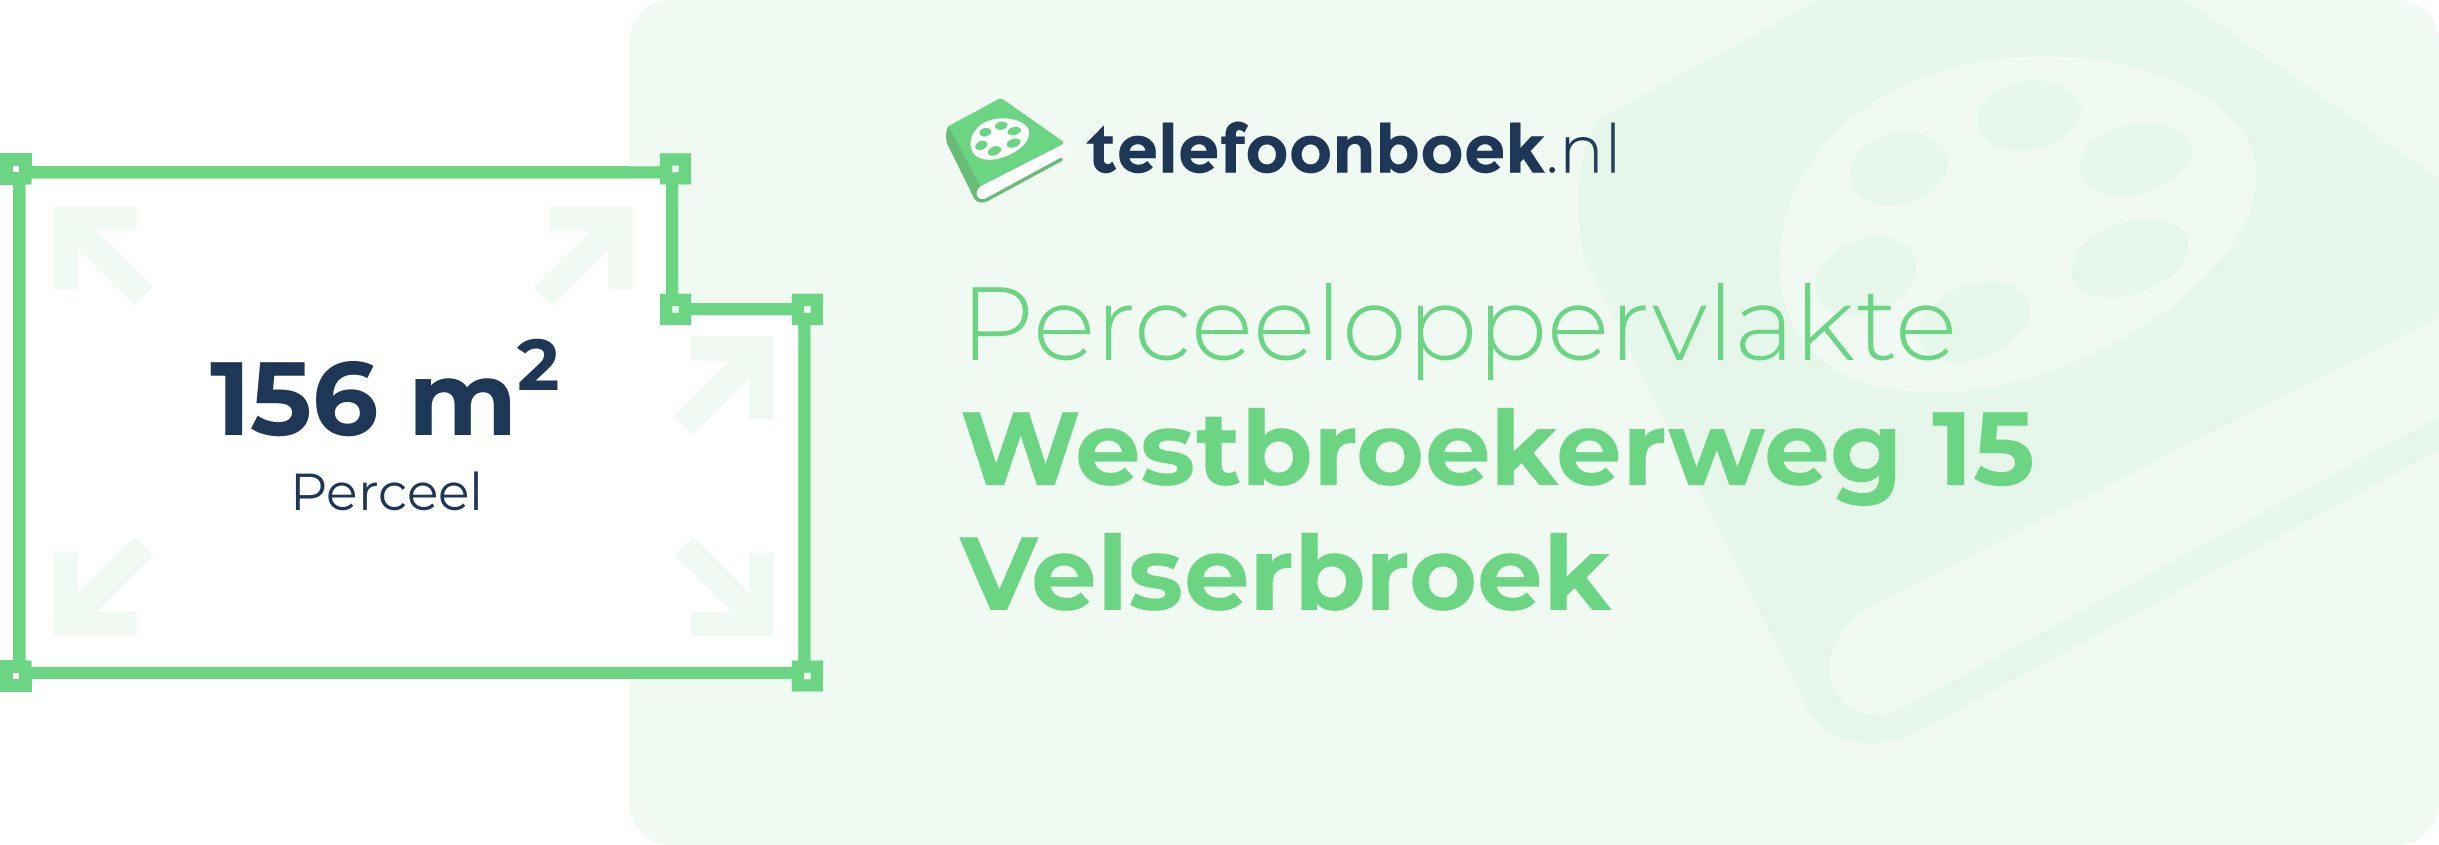 Perceeloppervlakte Westbroekerweg 15 Velserbroek